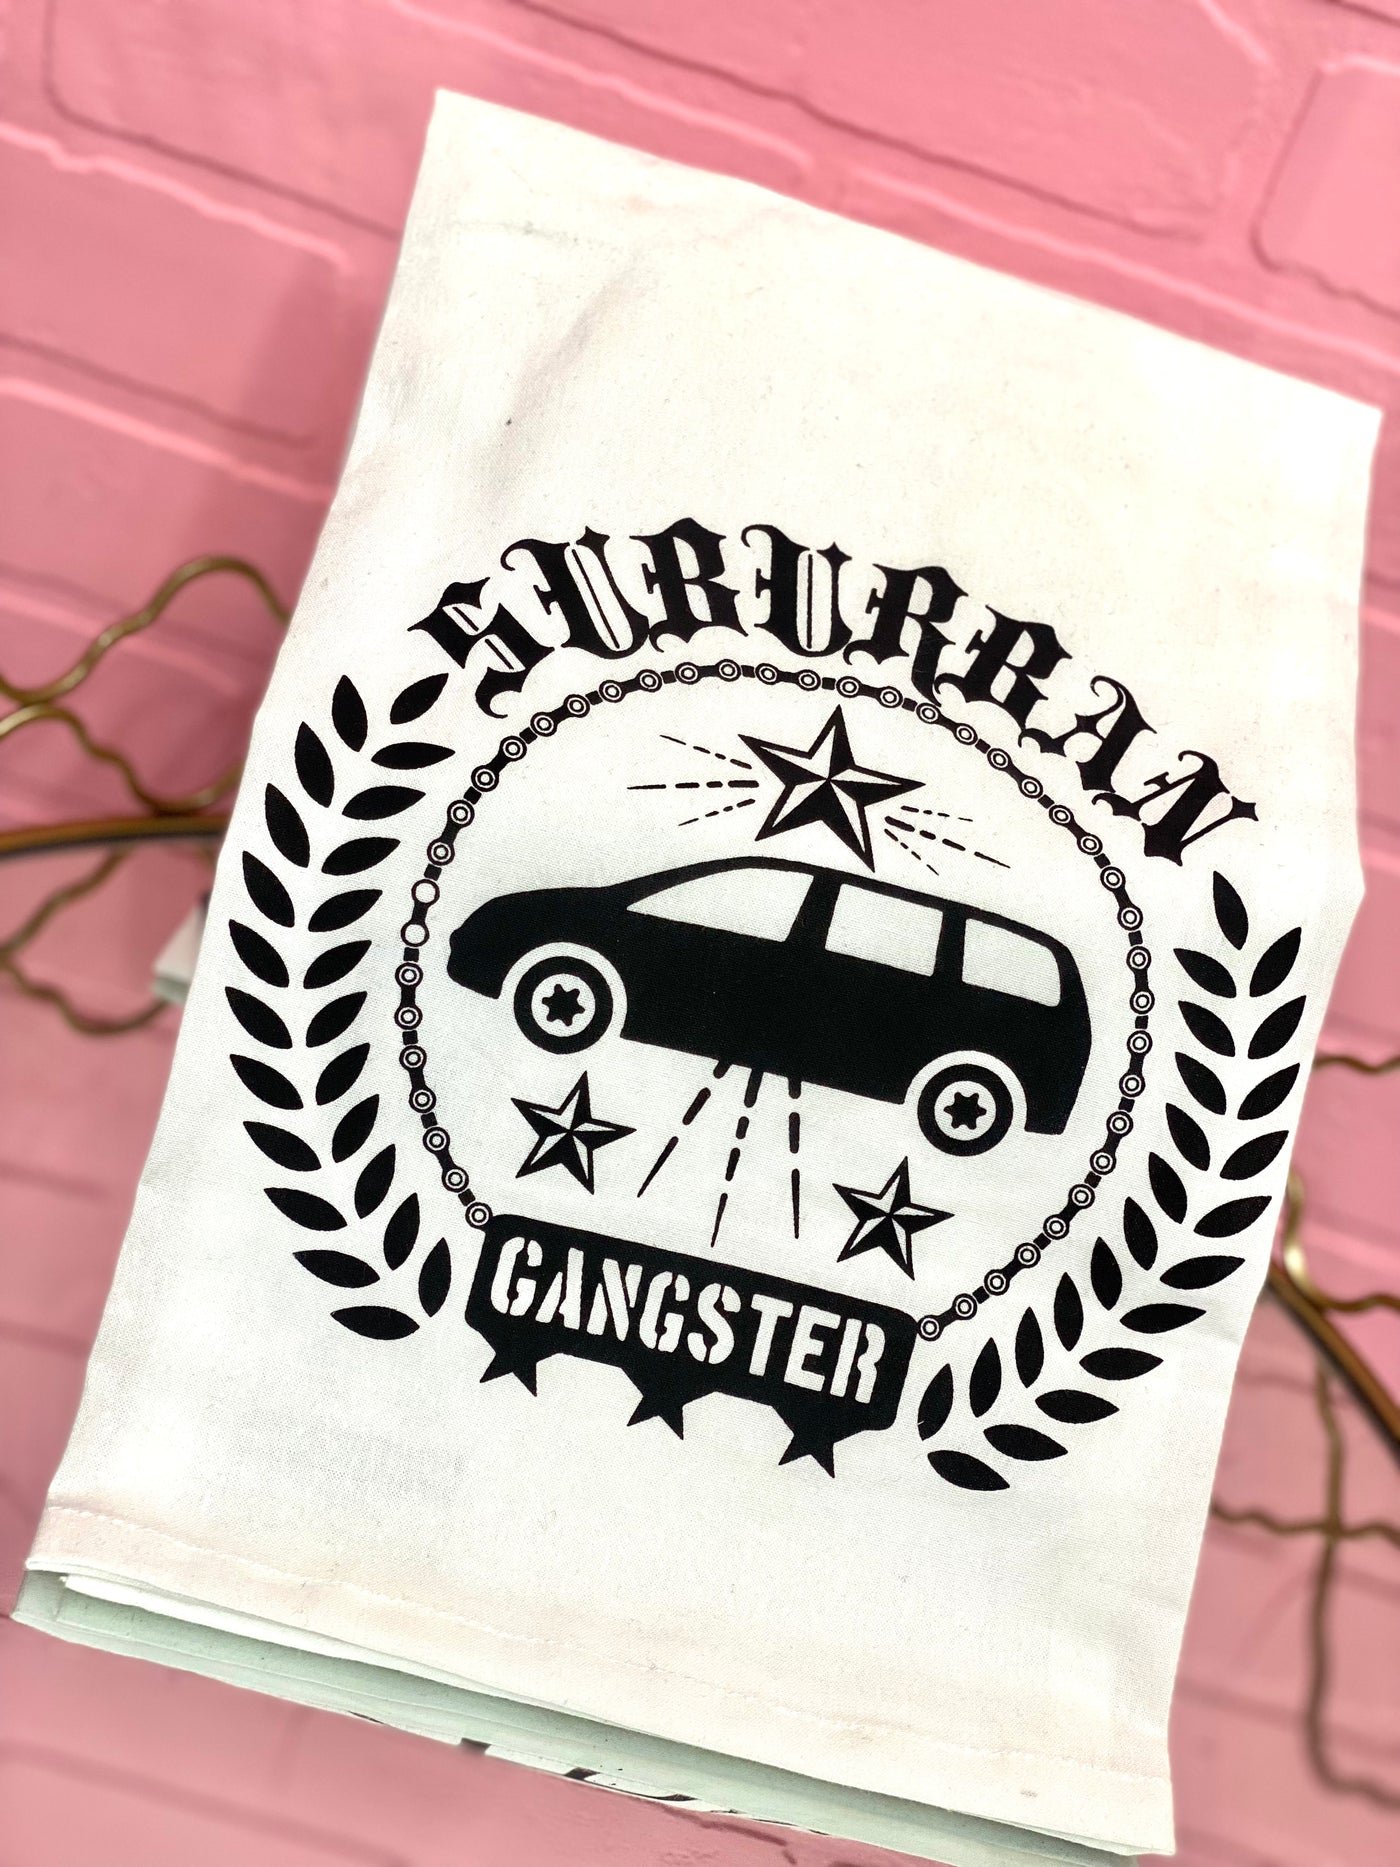 Suburban Gangster Towel